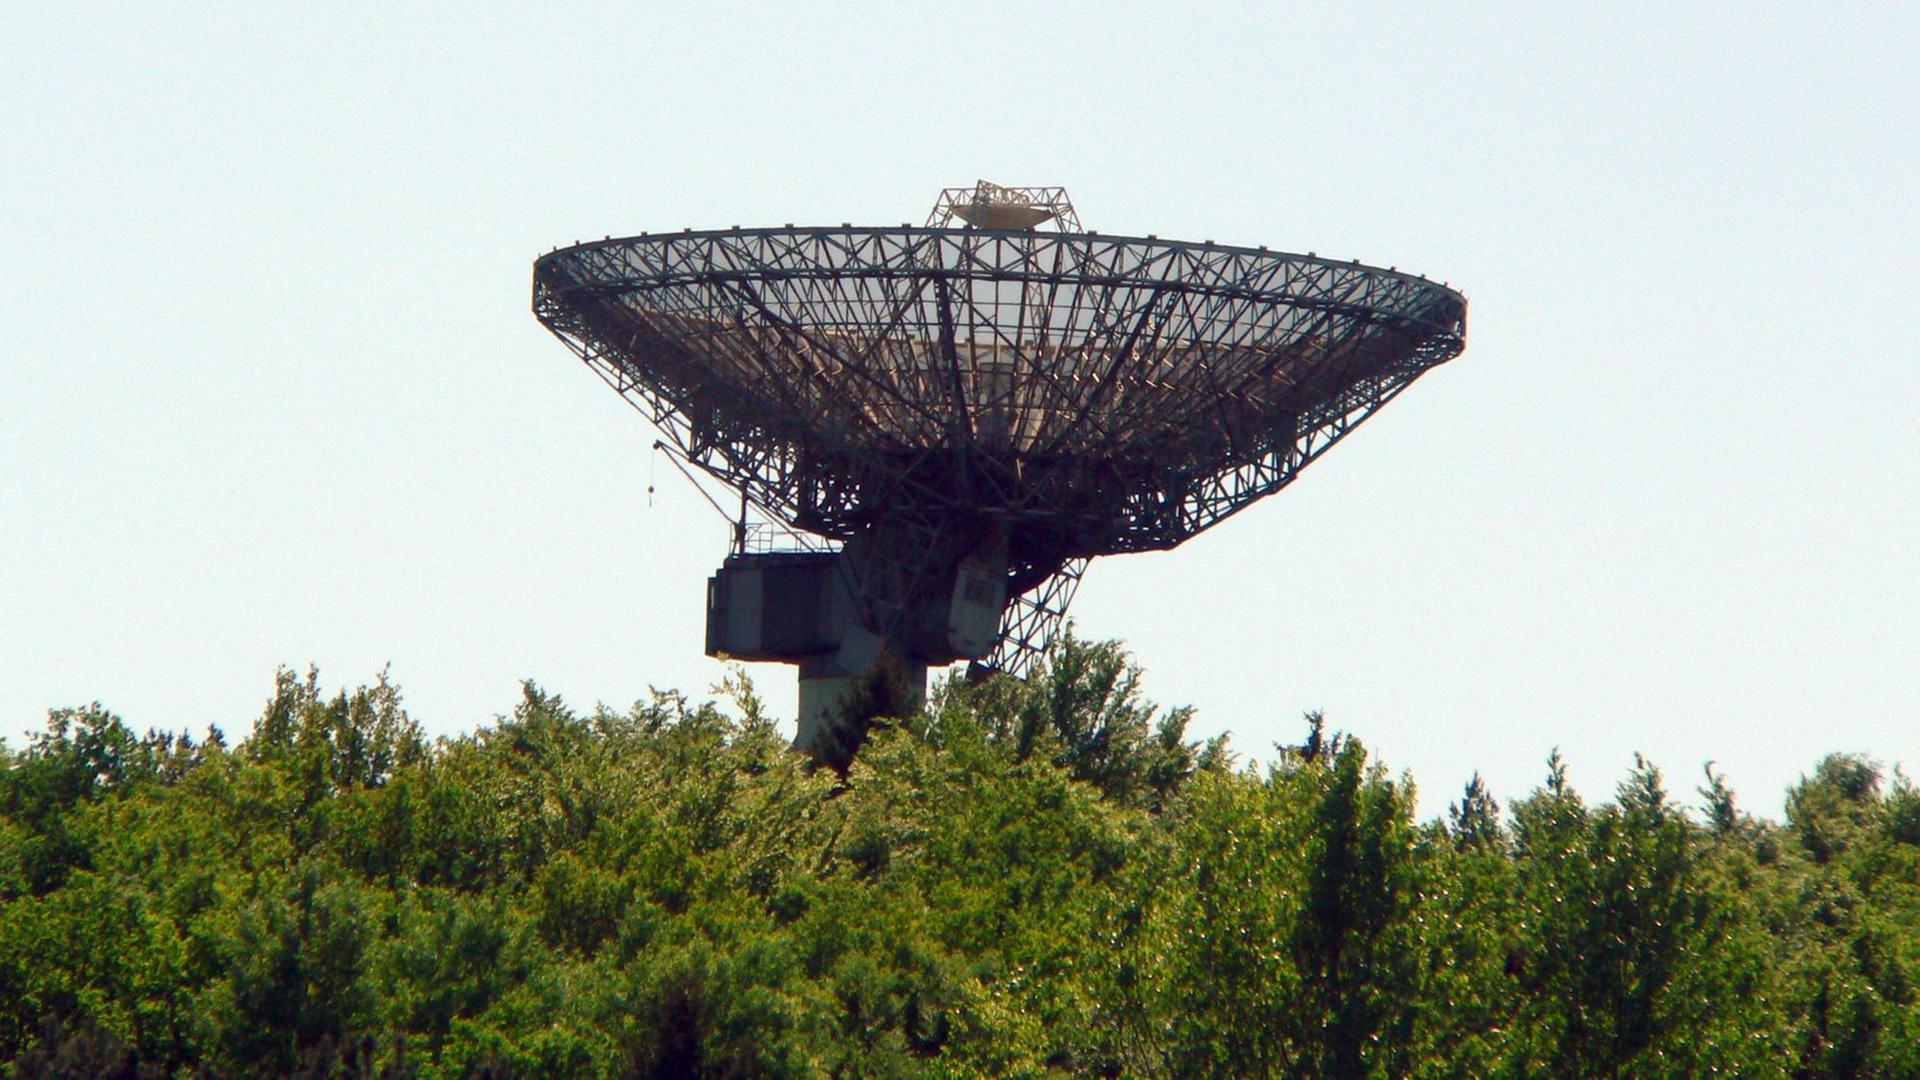 Das historische Radioteleskop auf dem Berg Stockert zwischen grünen Sträuchern und Bäumen.